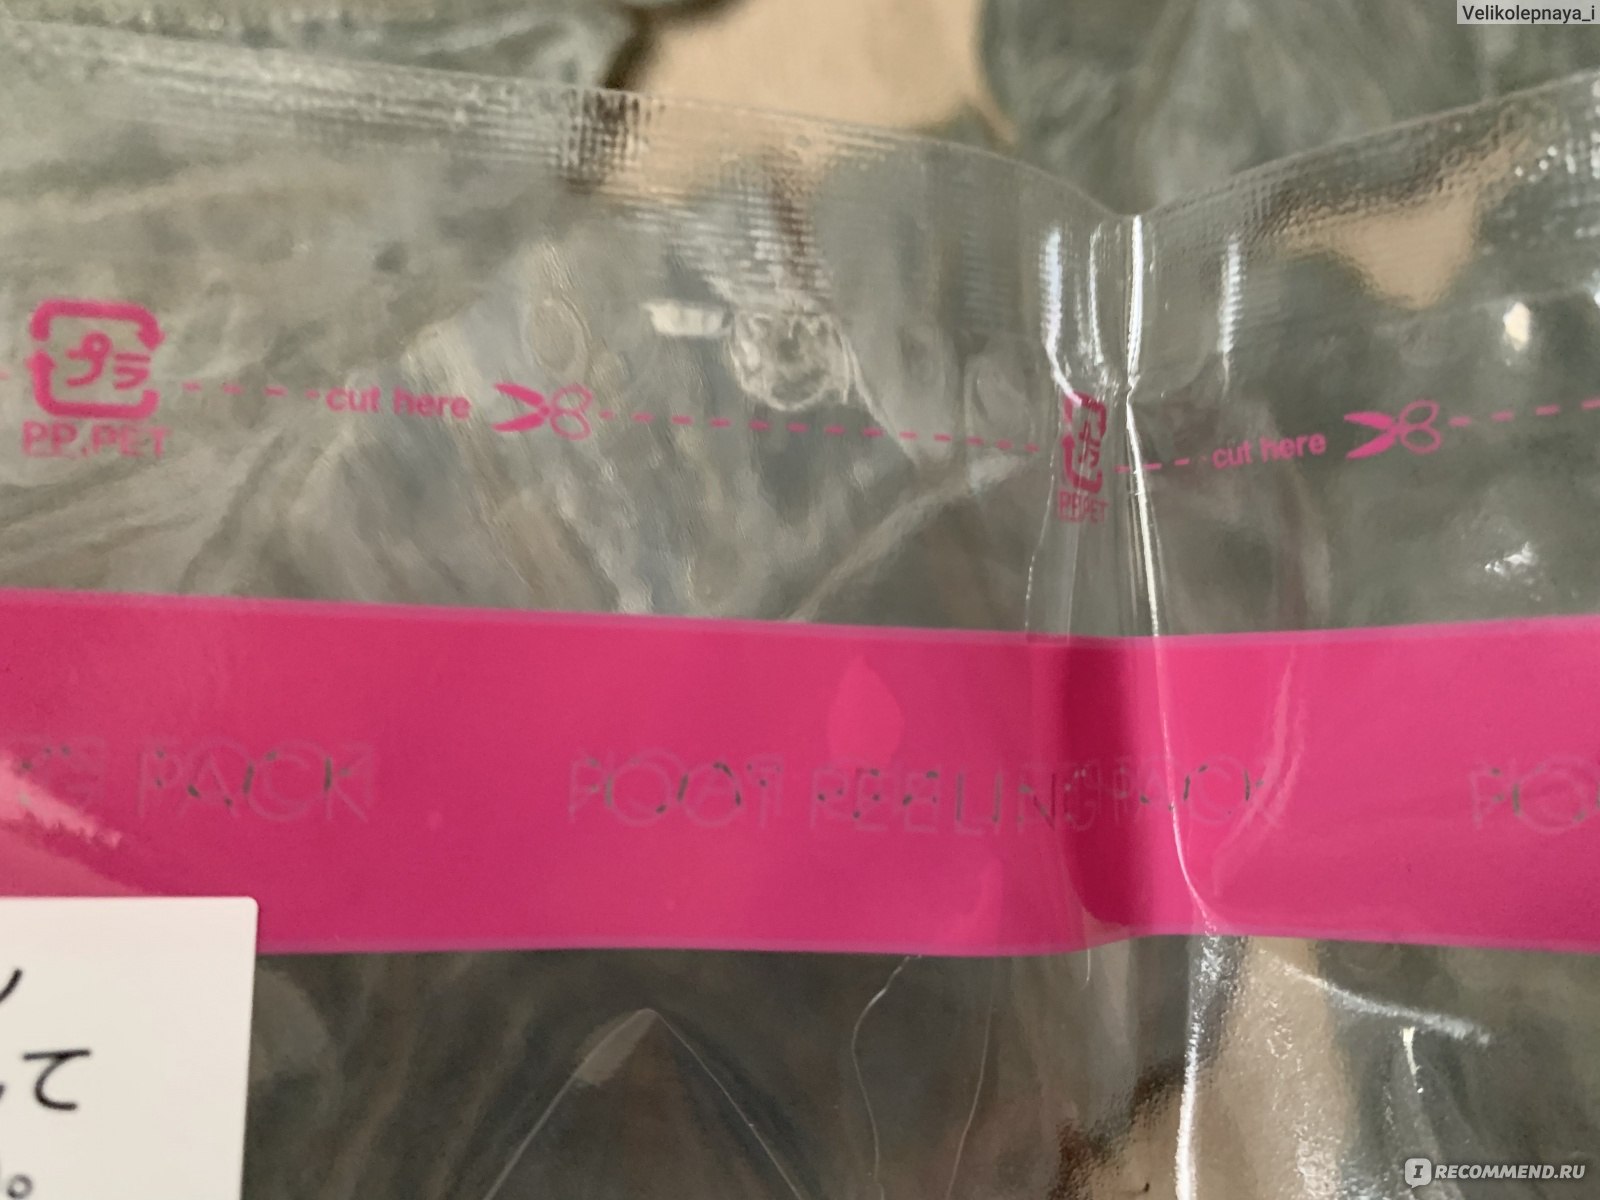 Носочки для педикюра SOSU Размер 35-41. С ароматом розы. фото